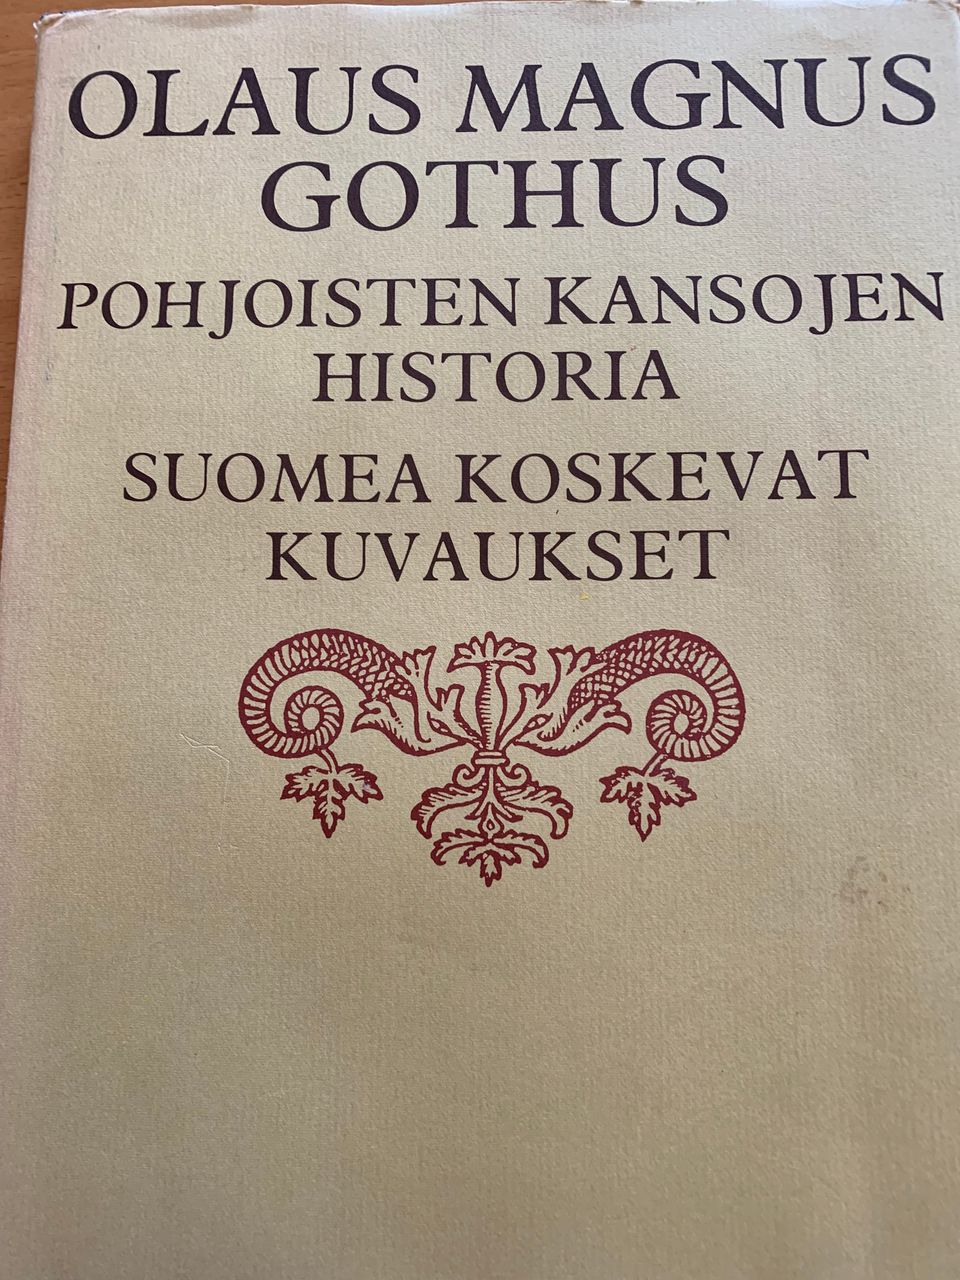 Olaus Magnus Gothus: Pohjoisten kansojen historia. Suomea koskevat kuvaukset.